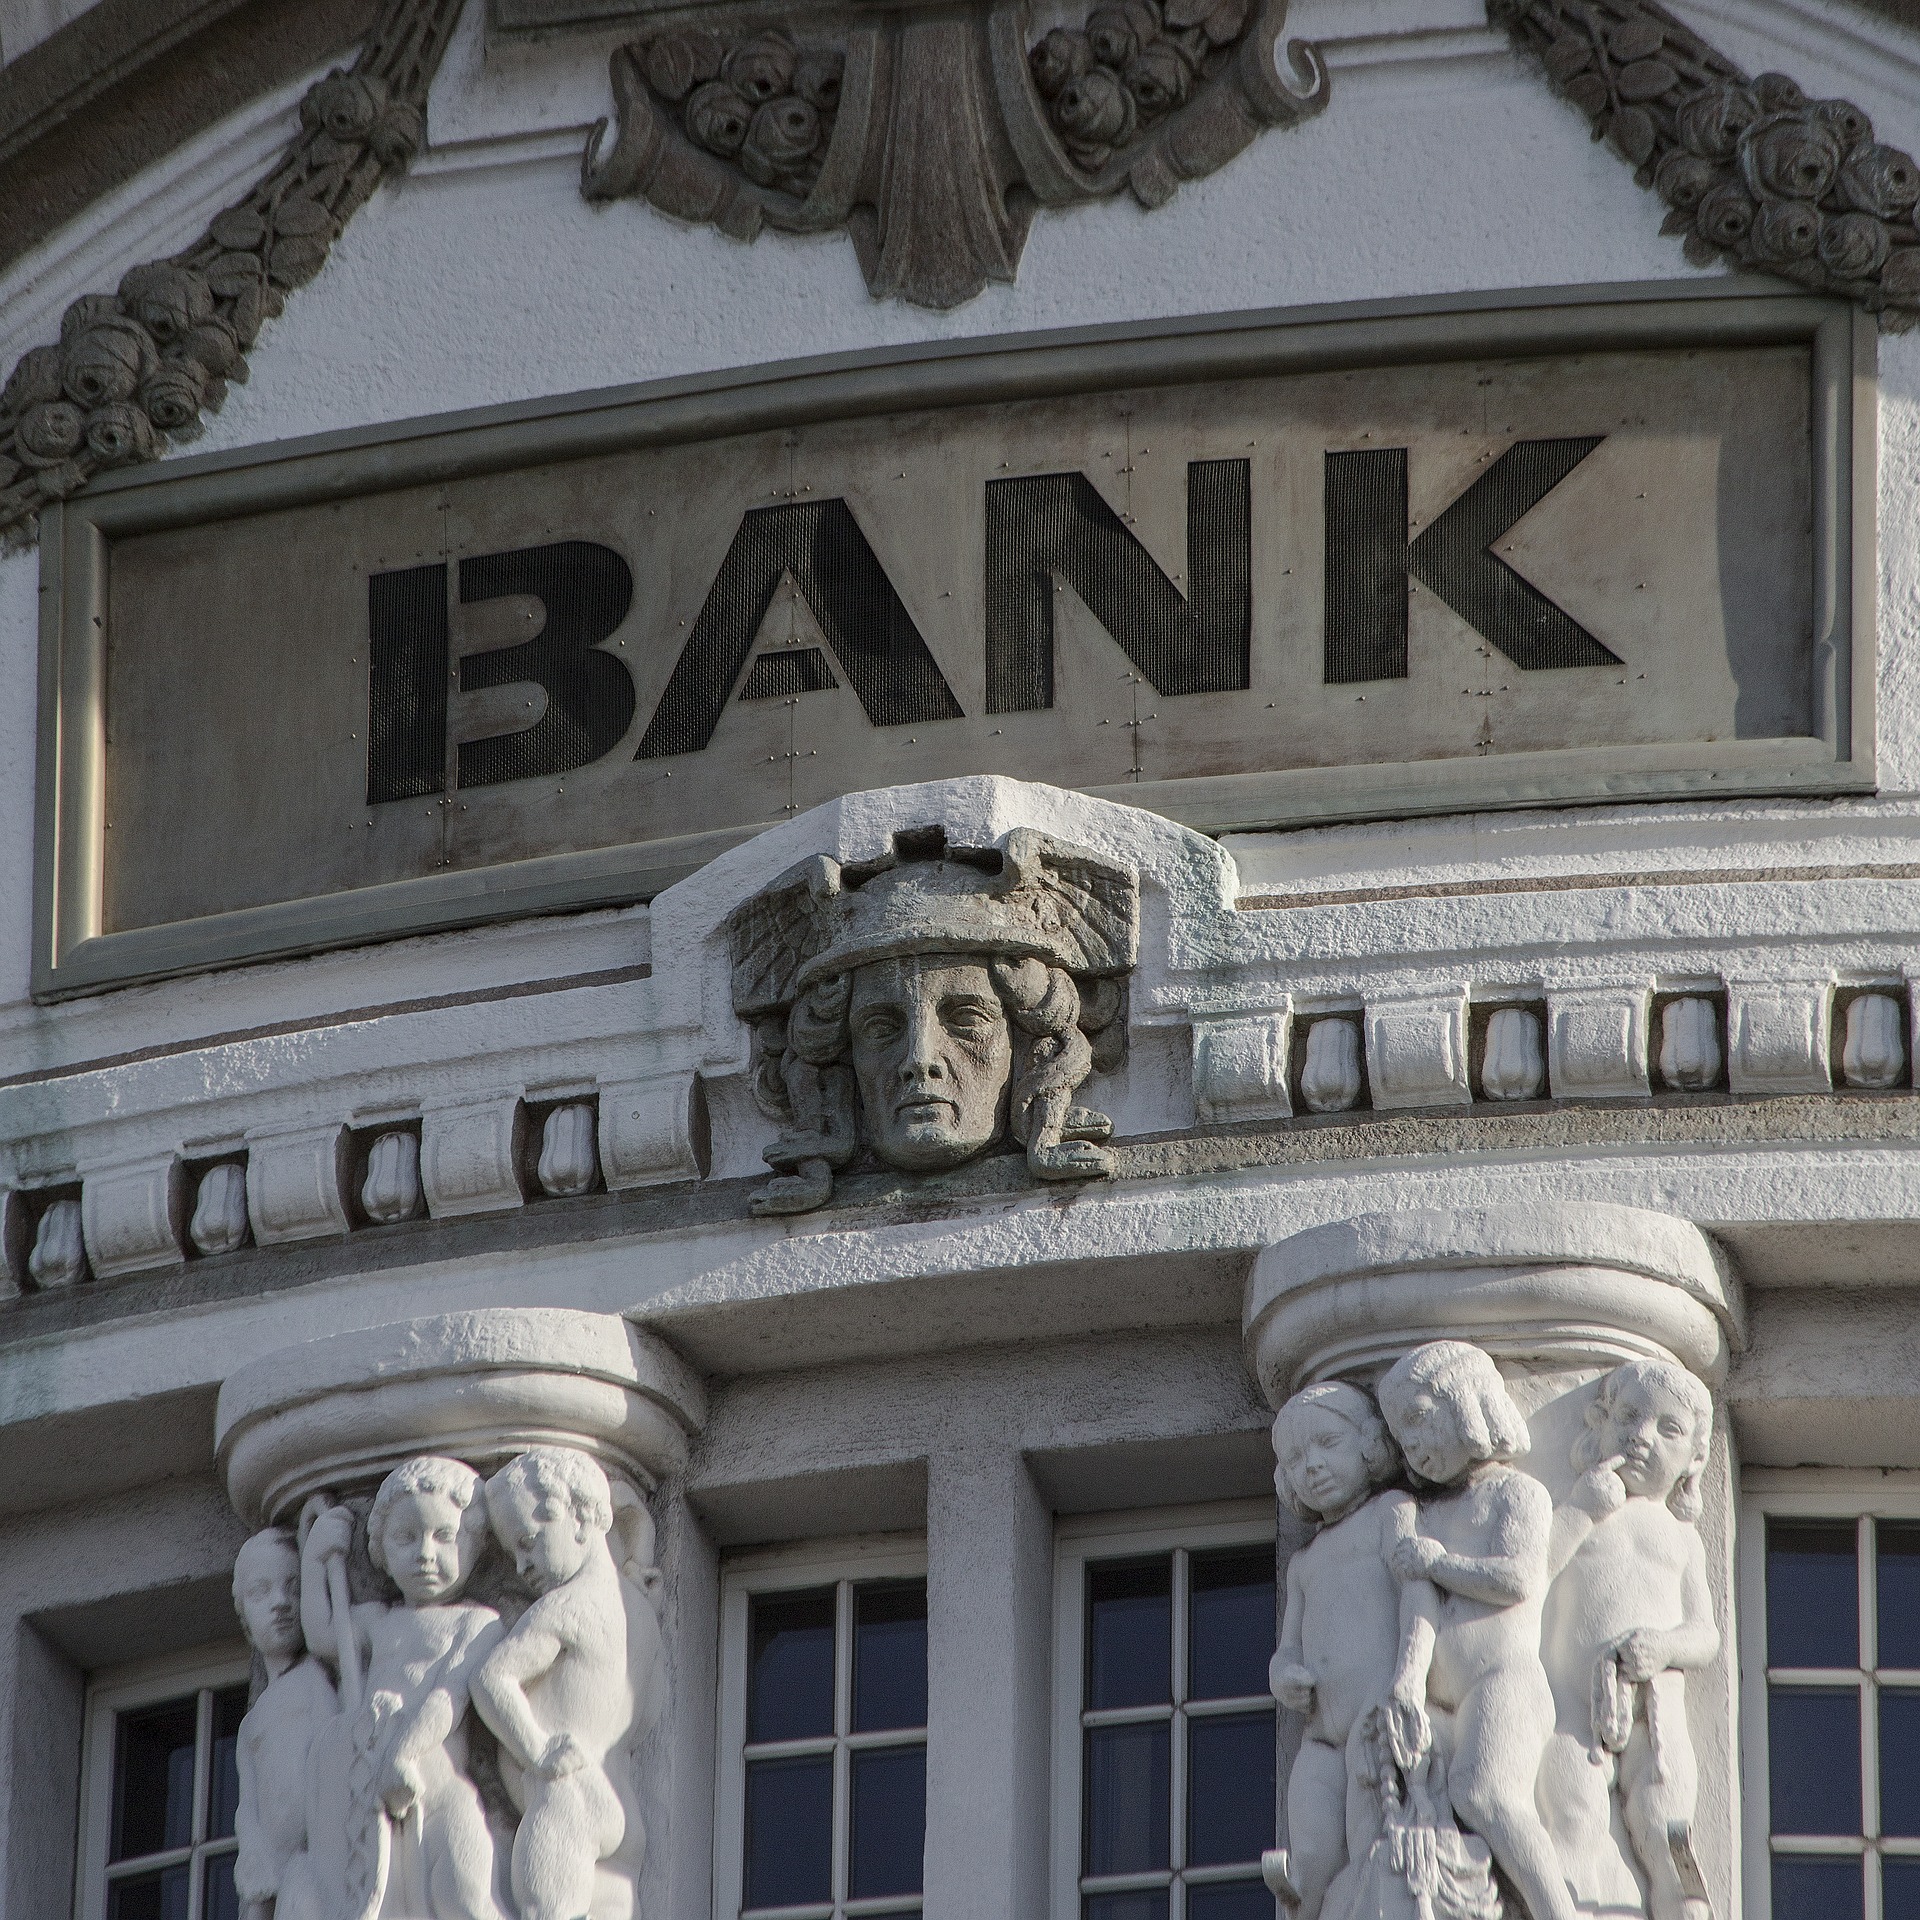 Nowoczesny bank to instytuacja, w której coraz więcej procesów jest automatyzowanych i zrobotyzowanych